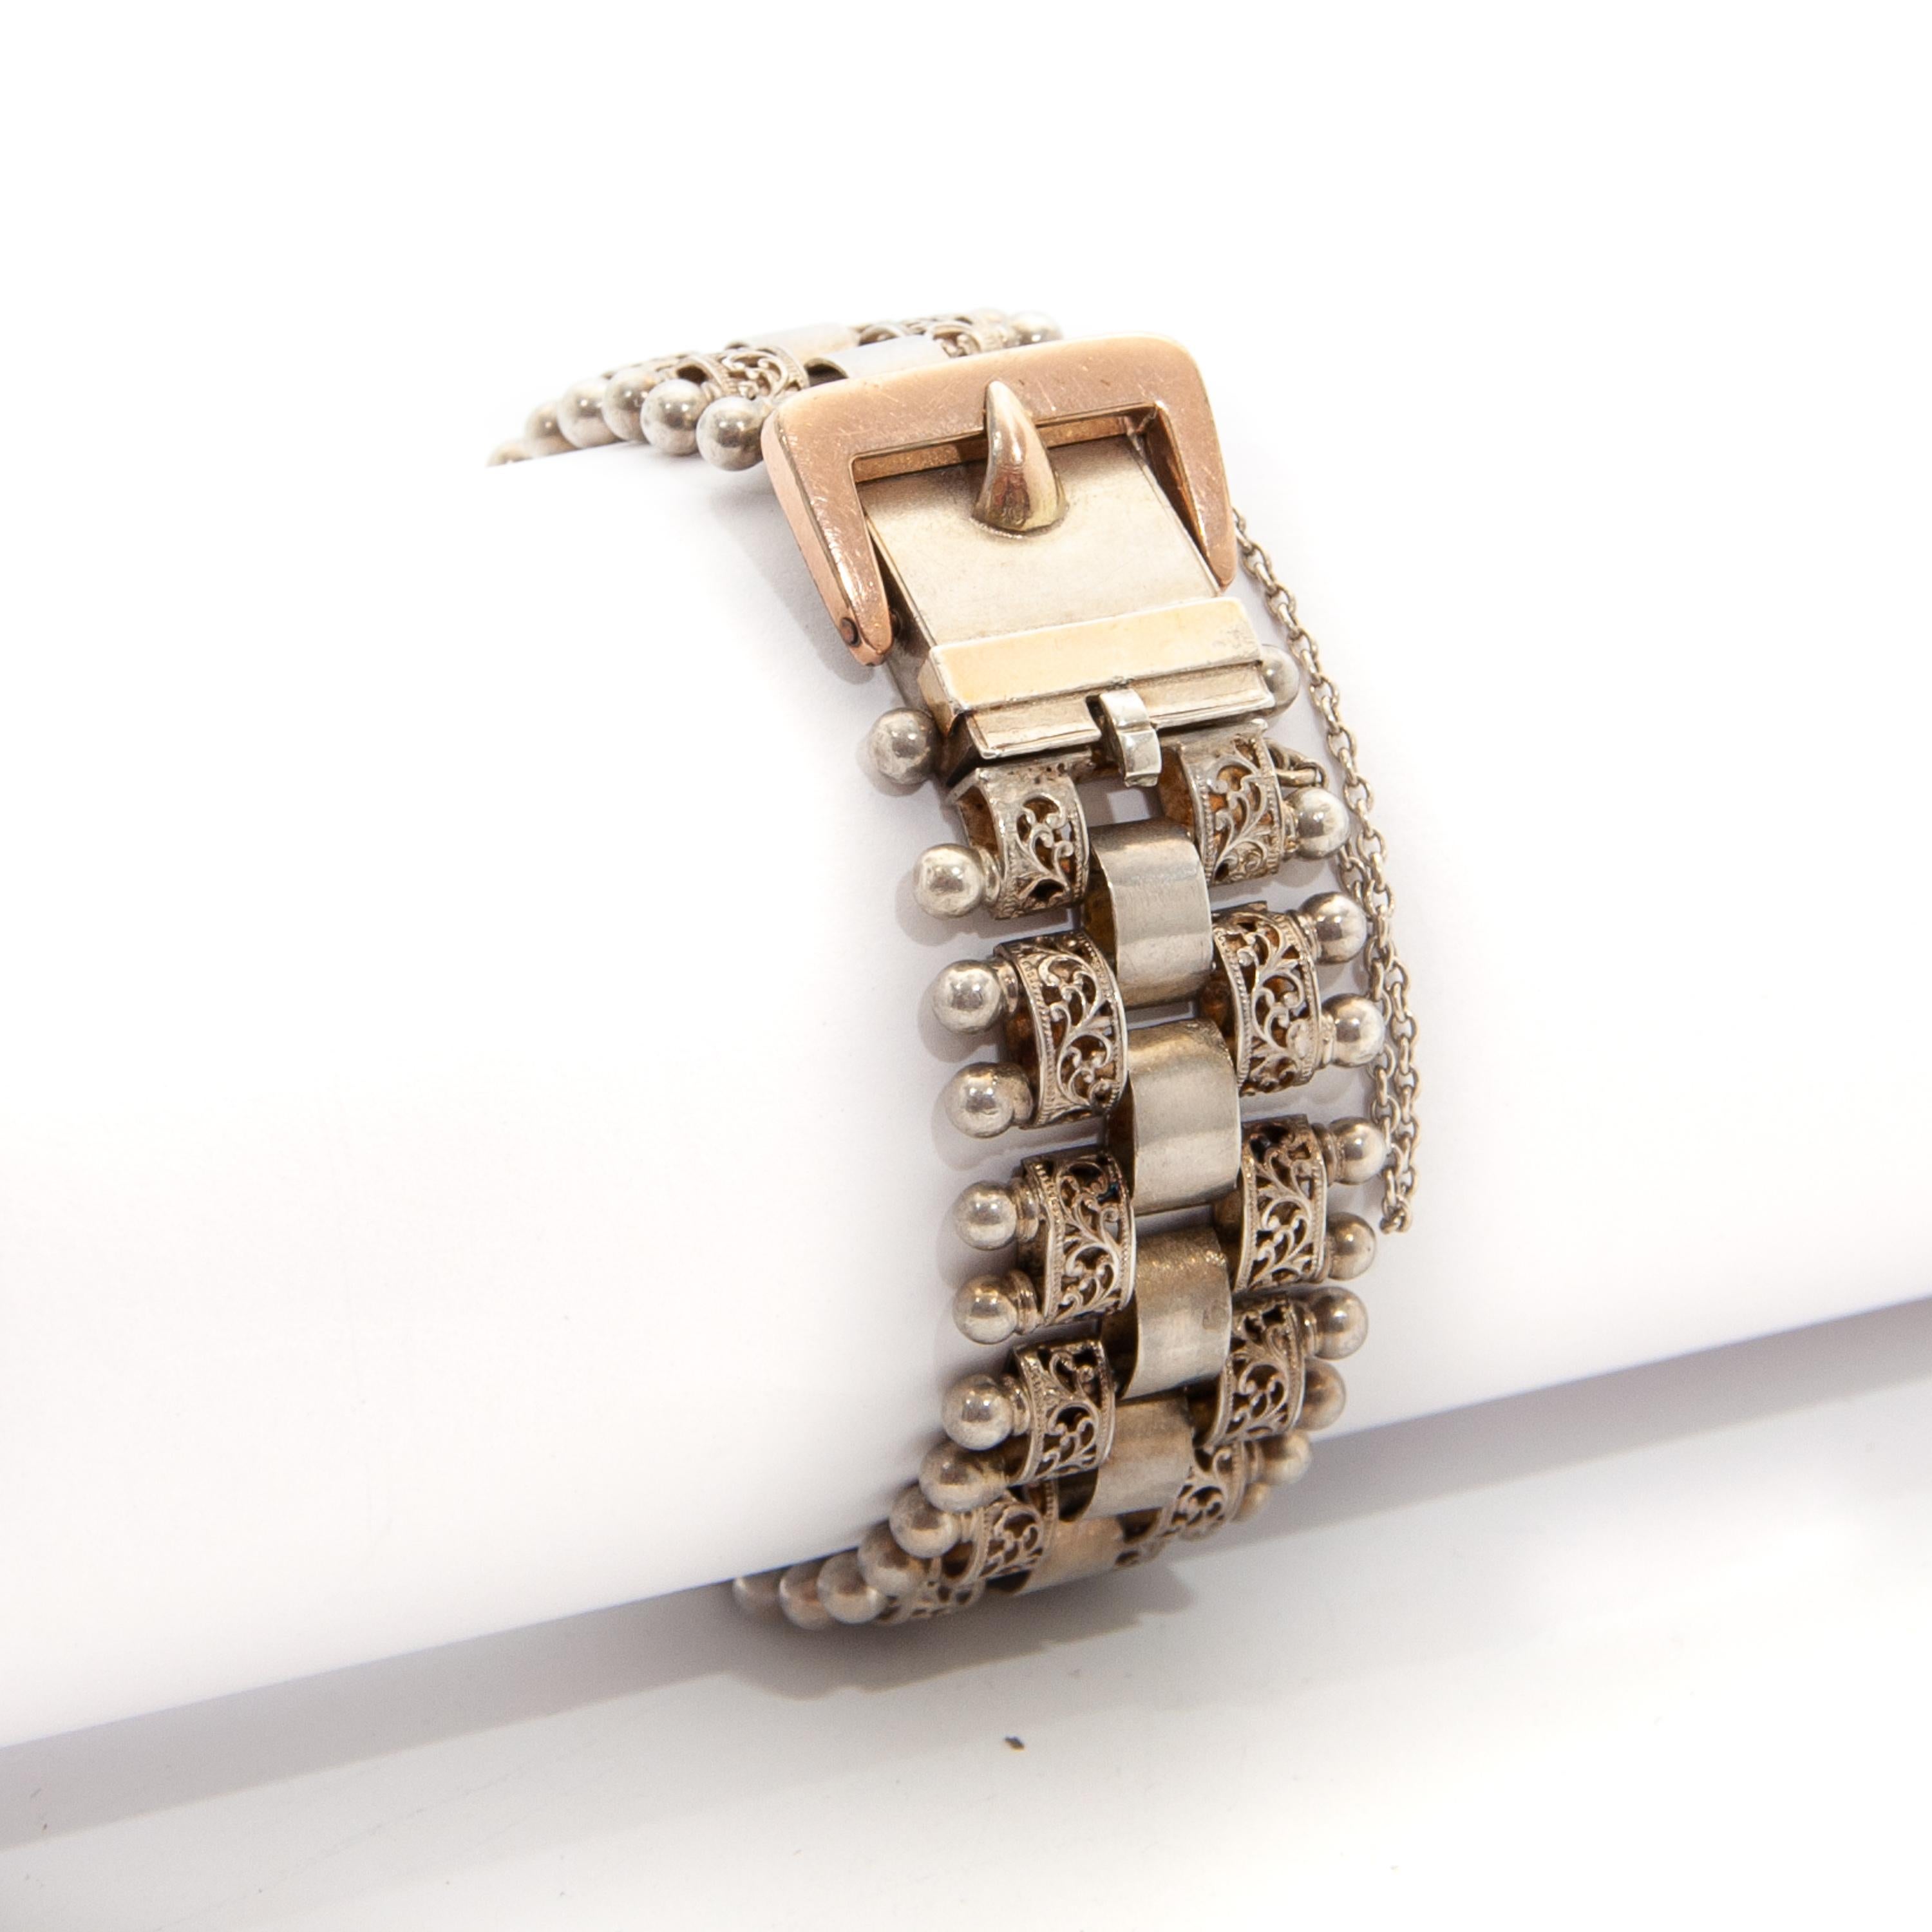 Un magnifique bracelet victorien antique à boucle, créé en argent et en or rose doré. La bande flexible de ce bracelet présente un design ajouré avec des maillons filigranes et des boules sur l'extérieur. Les maillons intérieurs ont une patine